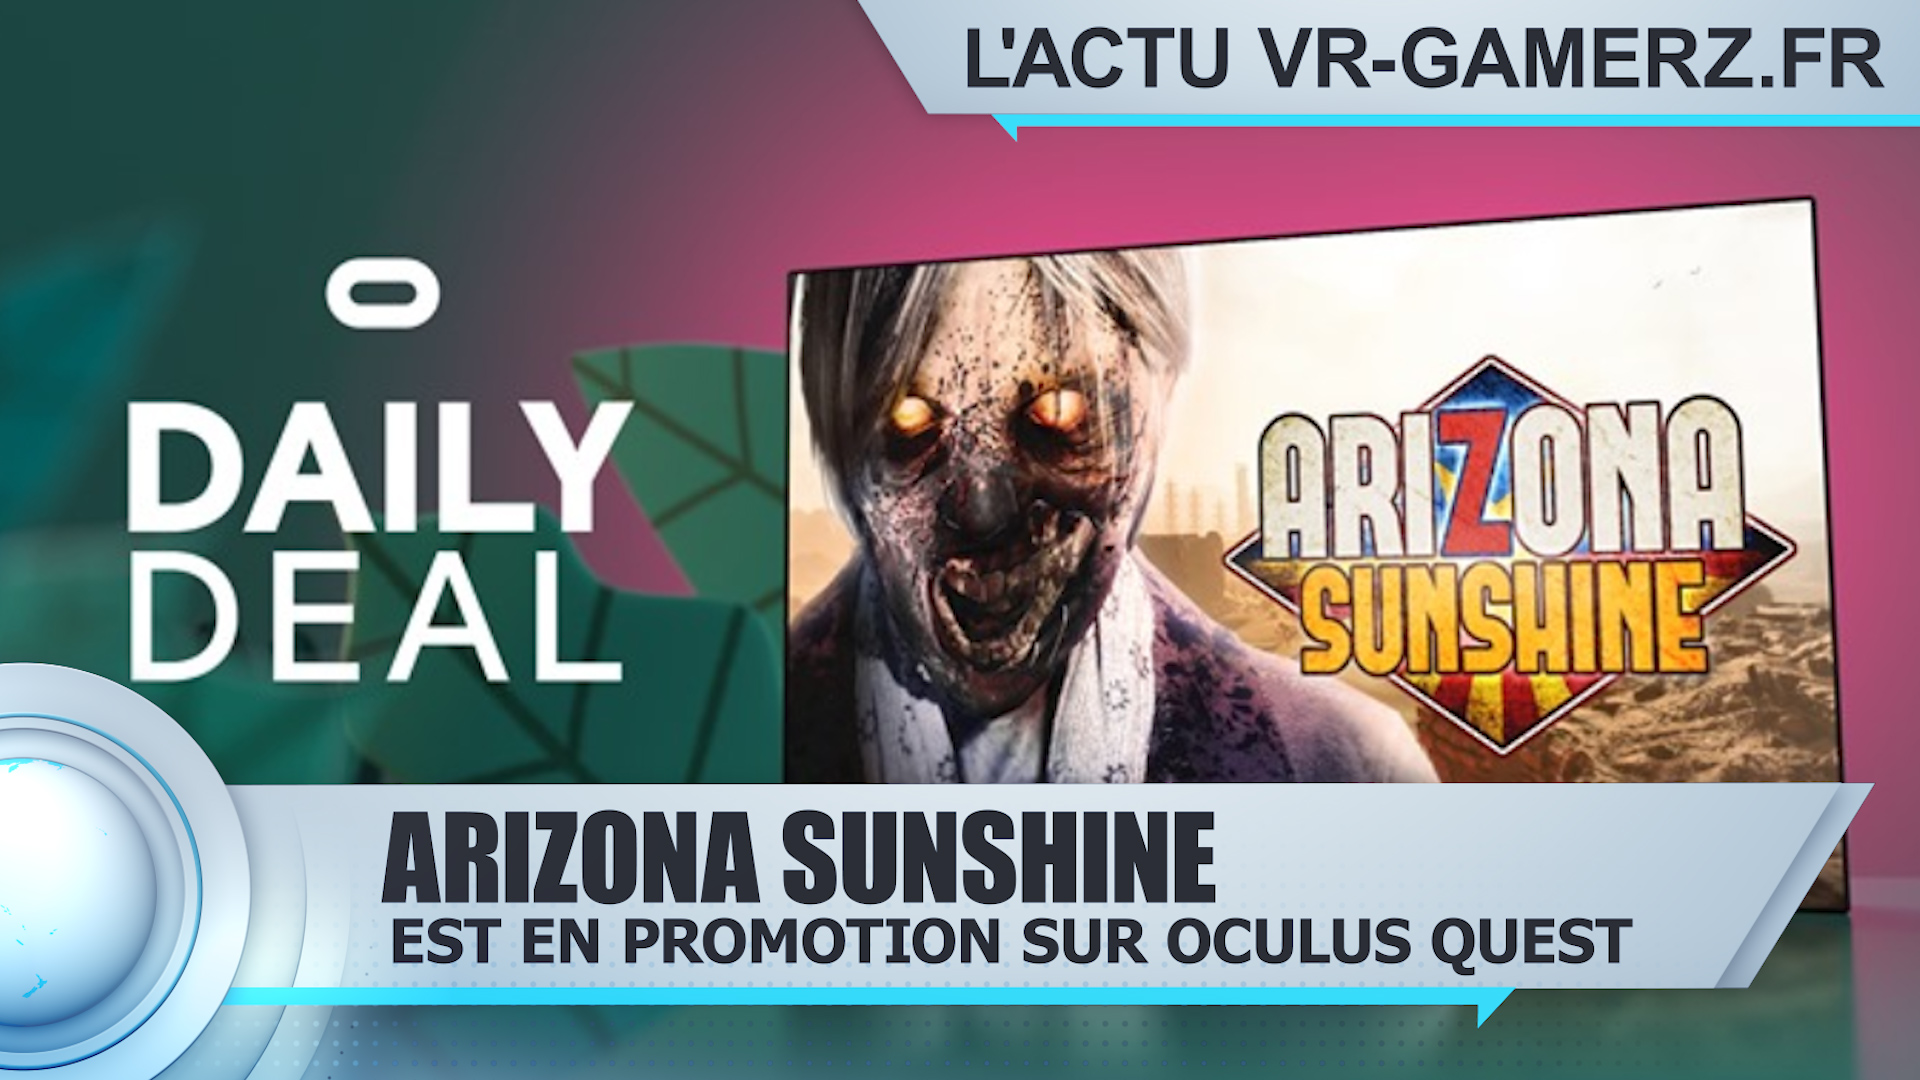 Arizona Sunshine est en promotion sur Oculus quest !